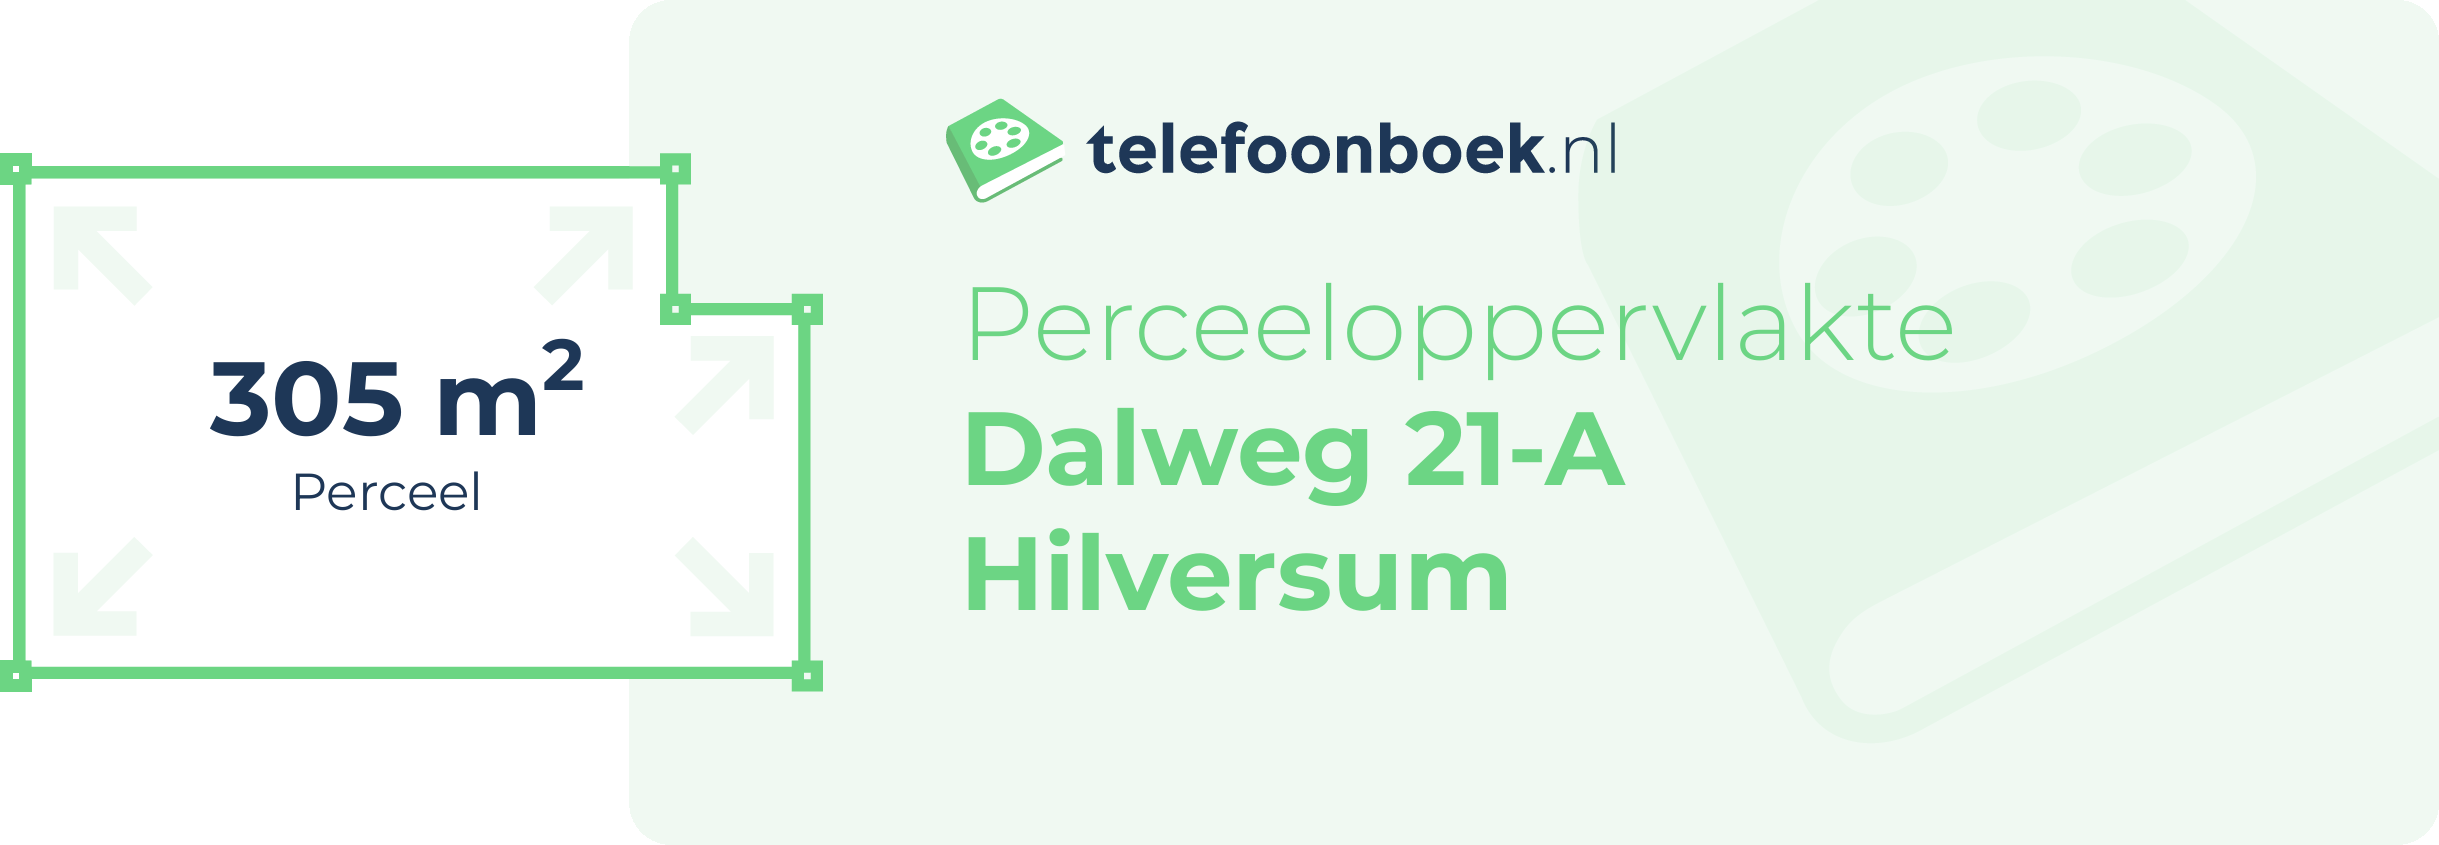 Perceeloppervlakte Dalweg 21-A Hilversum